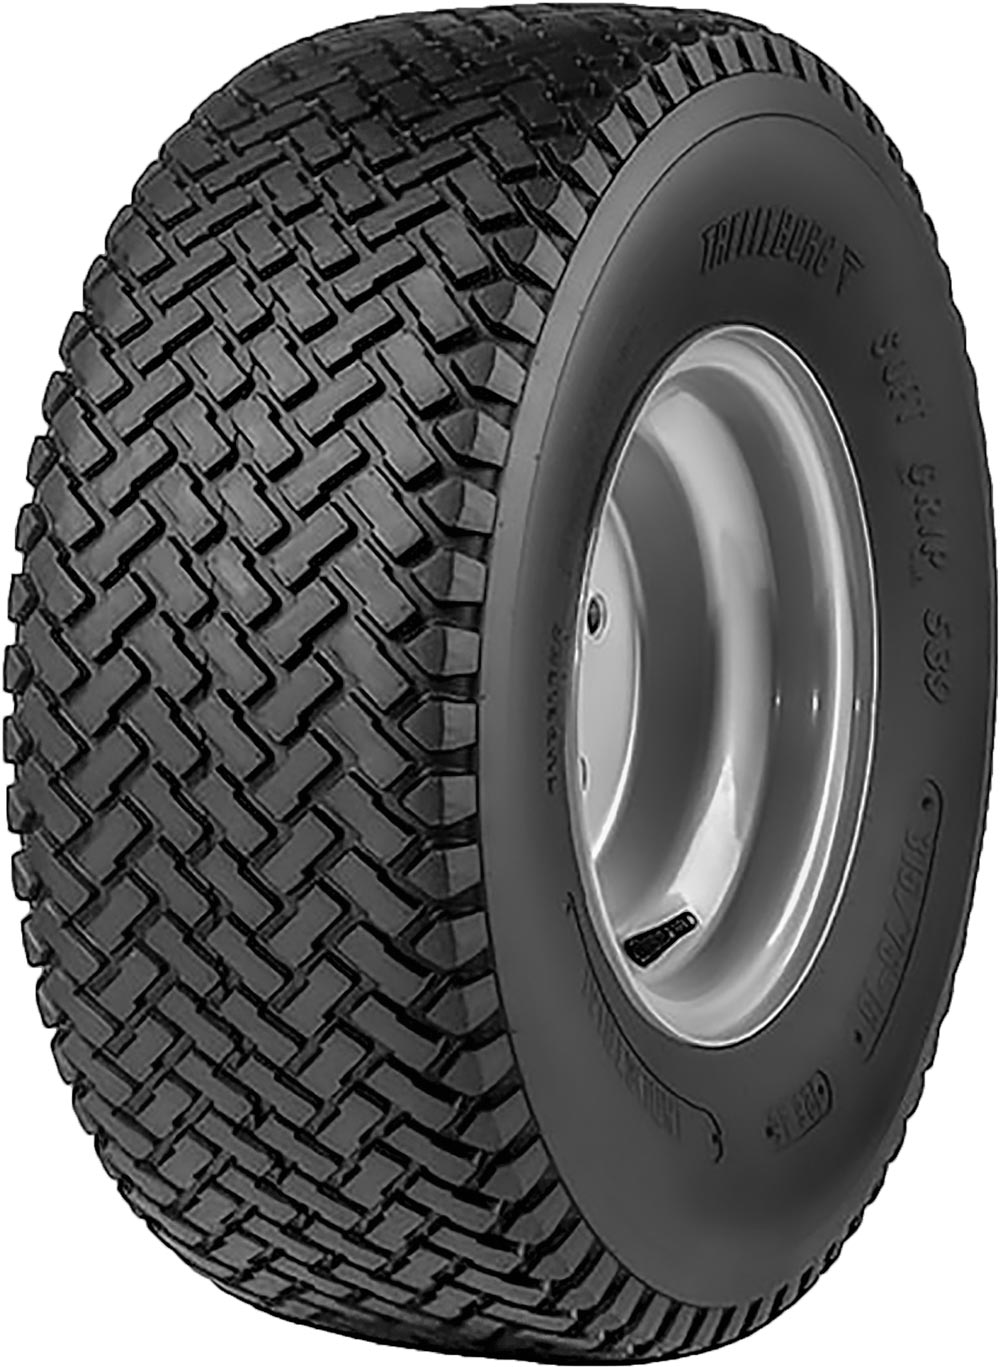 product_type-industrial_tires Trelleborg T539 6PR TT 4.1/3.5 R4 P